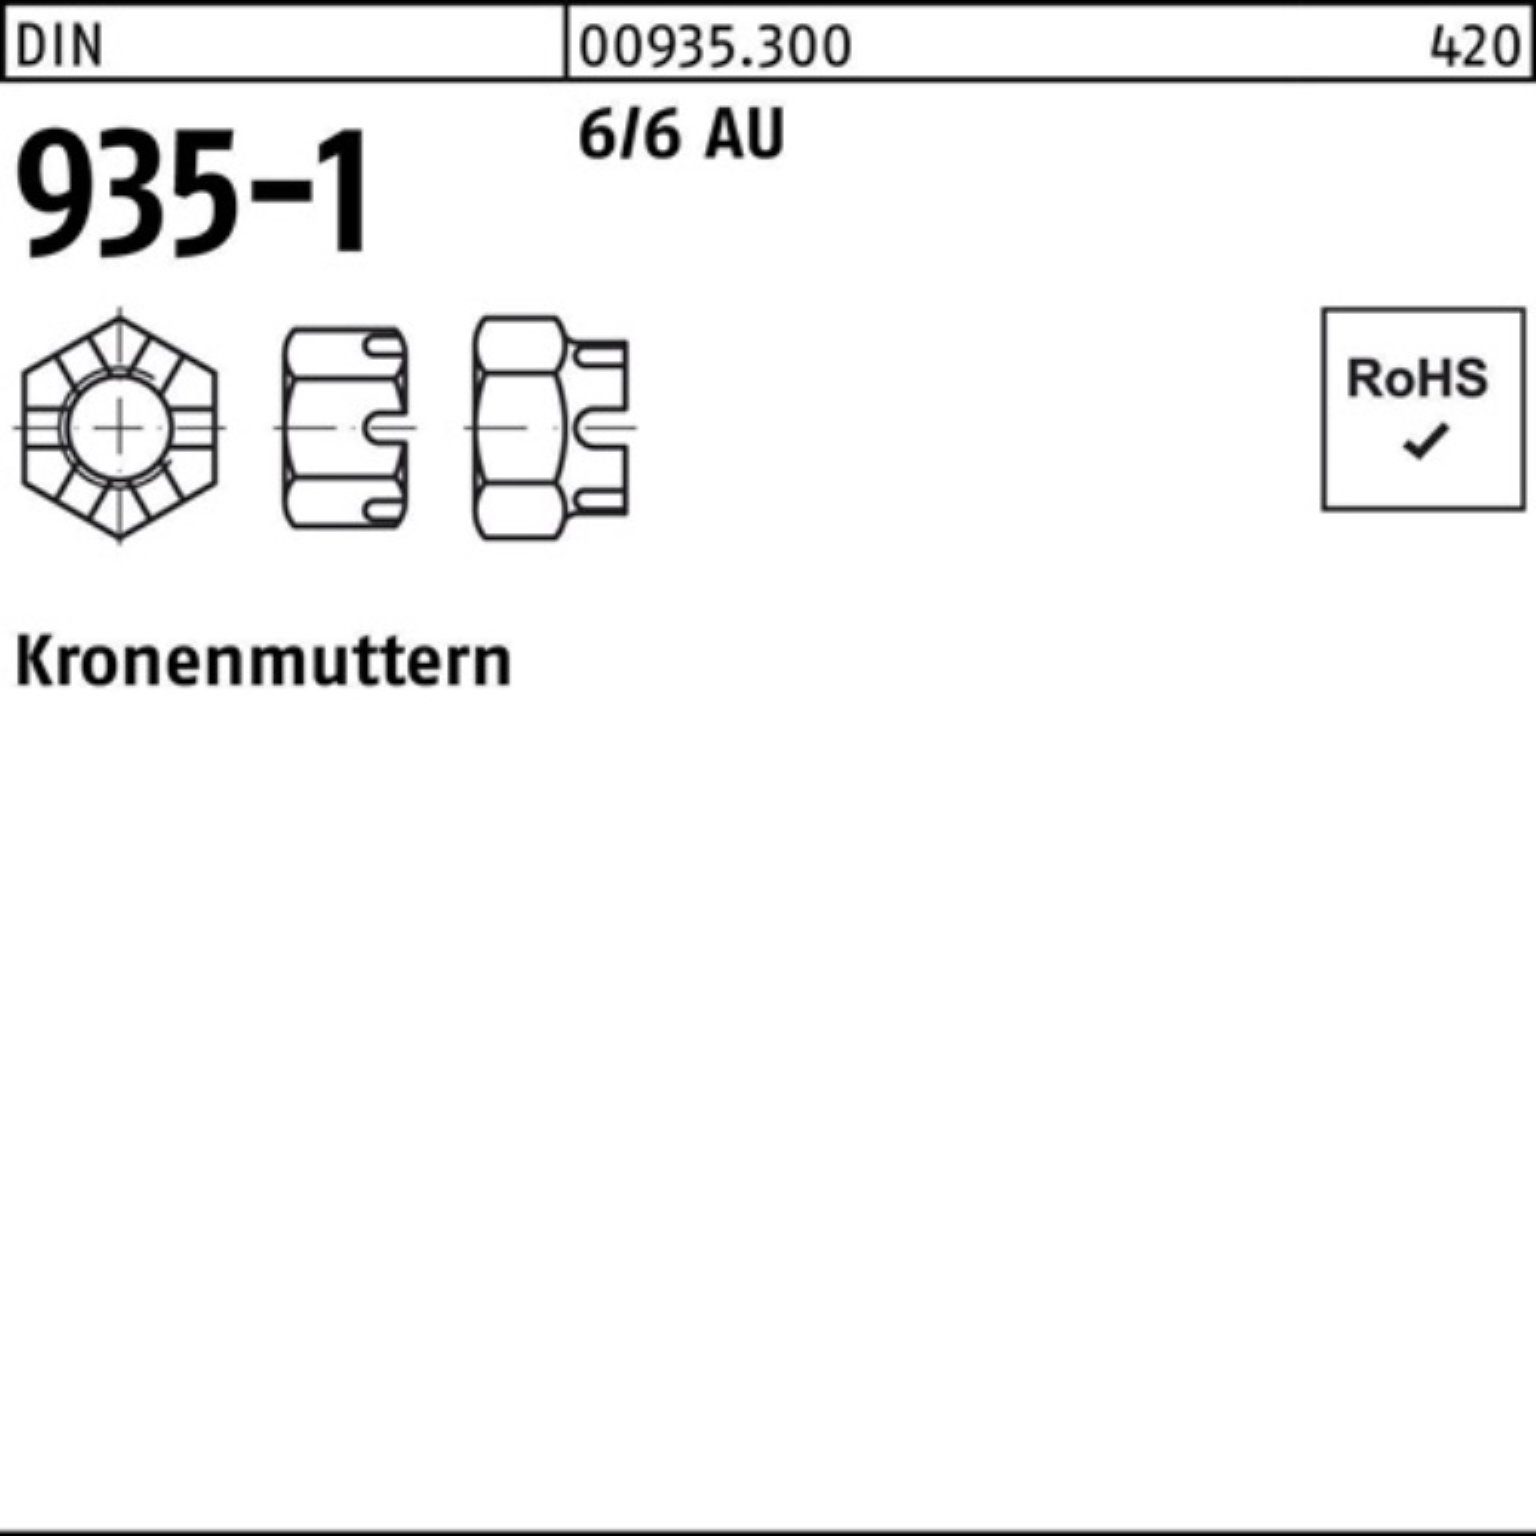 Reyher Kronenmutter 100er 935-1 1 Automatenstahl Kronenmutter DIN Stück M45 Pack 6/6 DIN